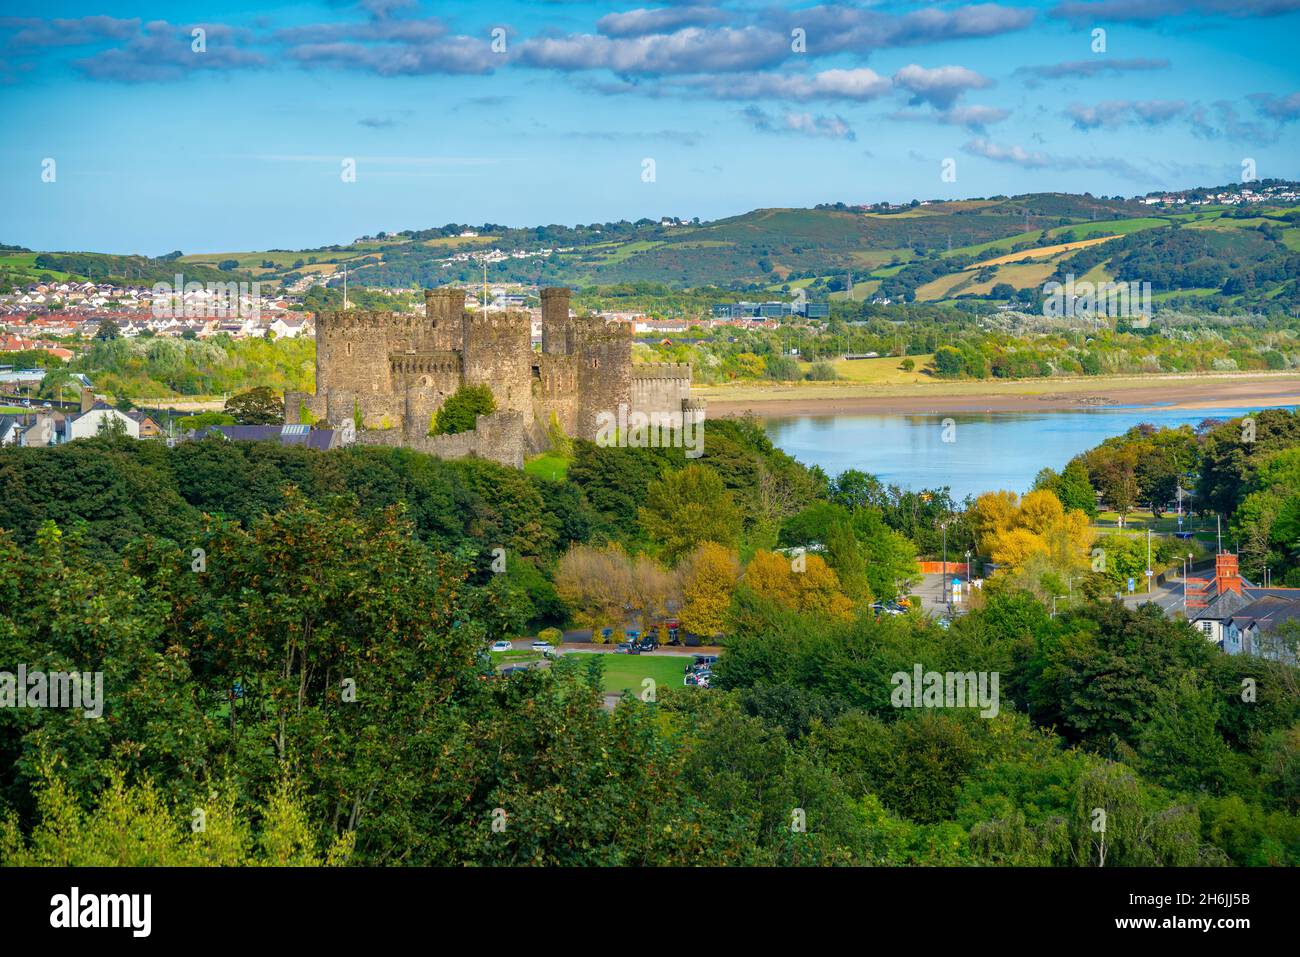 Vue surélevée du château de Conwy, site classé au patrimoine mondial de l'UNESCO, et de la rivière Conwy visible en arrière-plan, Conwy, Gwynedd, pays de Galles du Nord, Royaume-Uni,Europe Banque D'Images